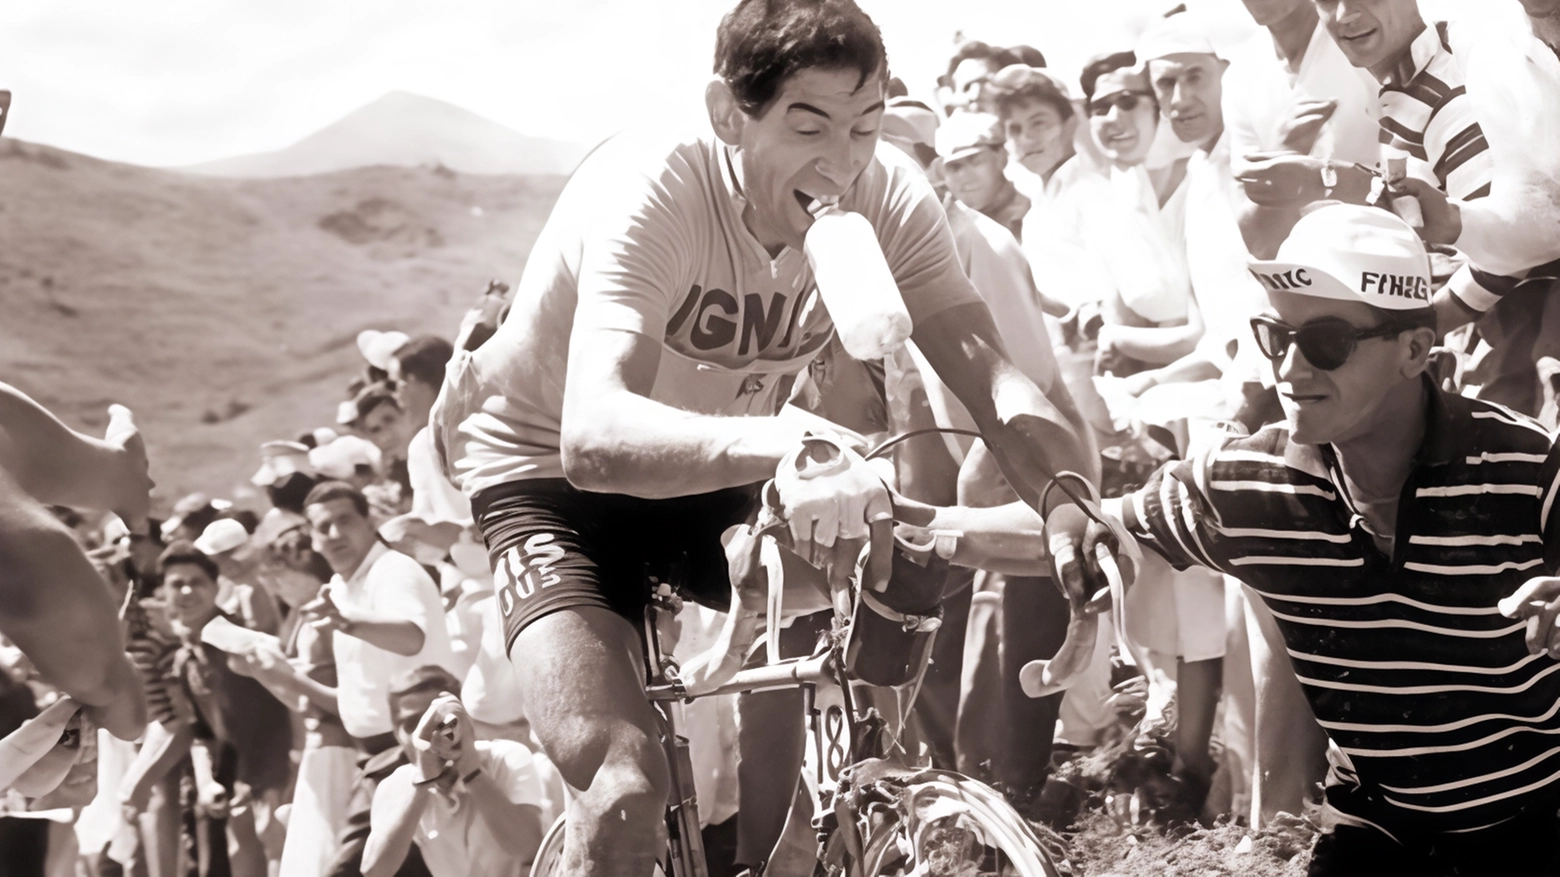 Il racconto della figlia Elisabetta: "È stato una leggenda del ciclismo. Ma era anche un uomo leale e un atleta, tranne qualche sigaretta". .